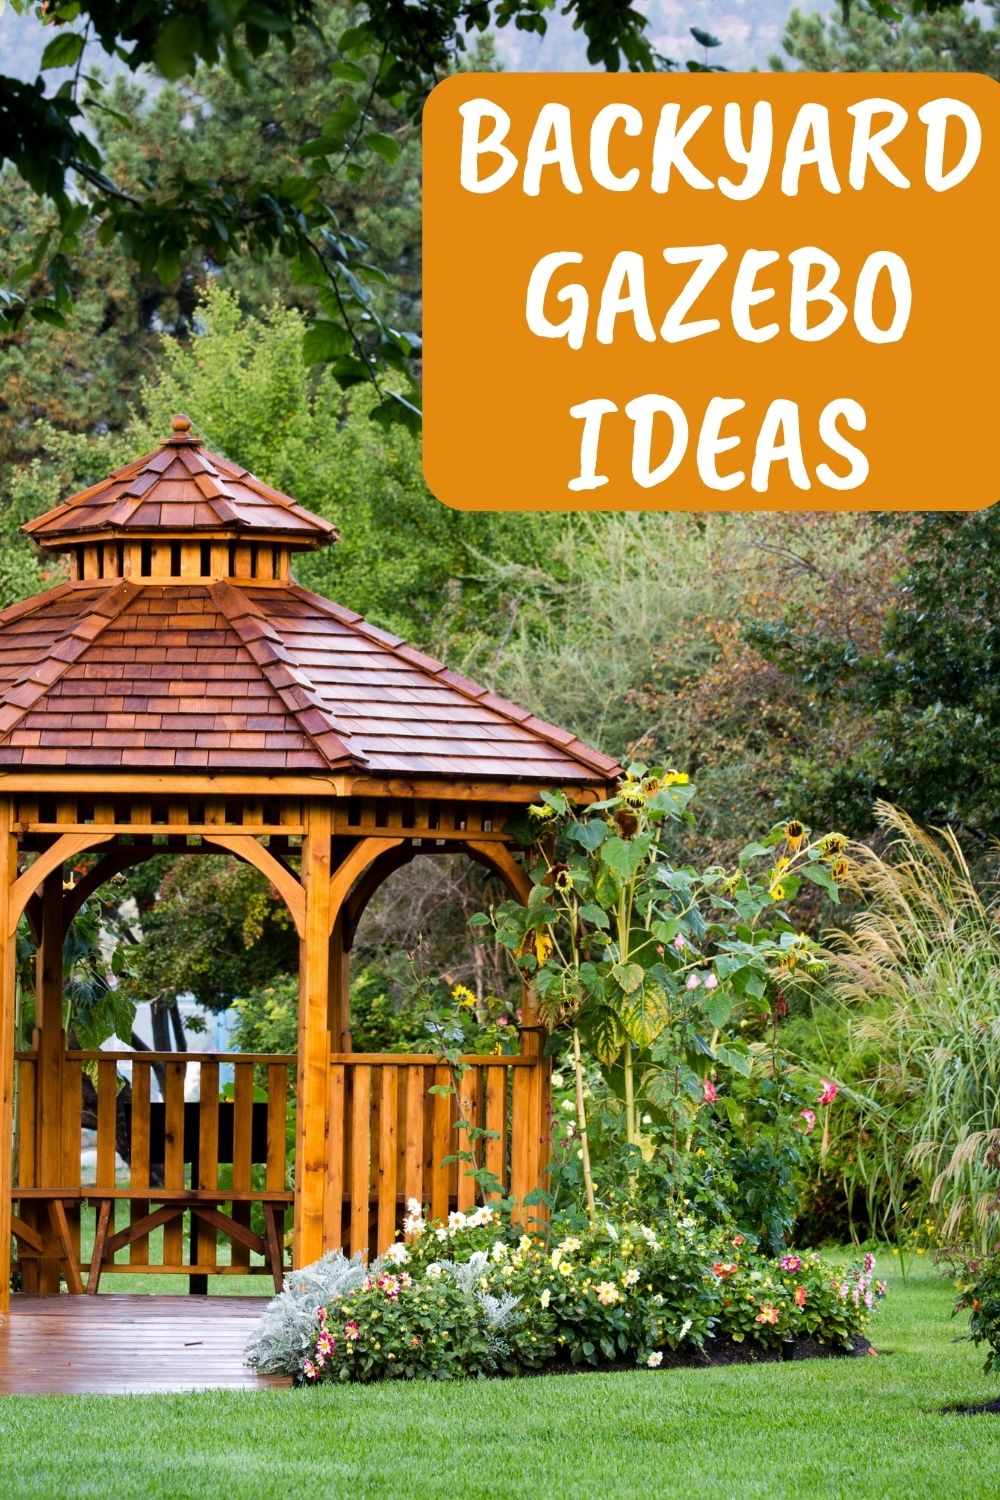 Backyard gazebo ideas